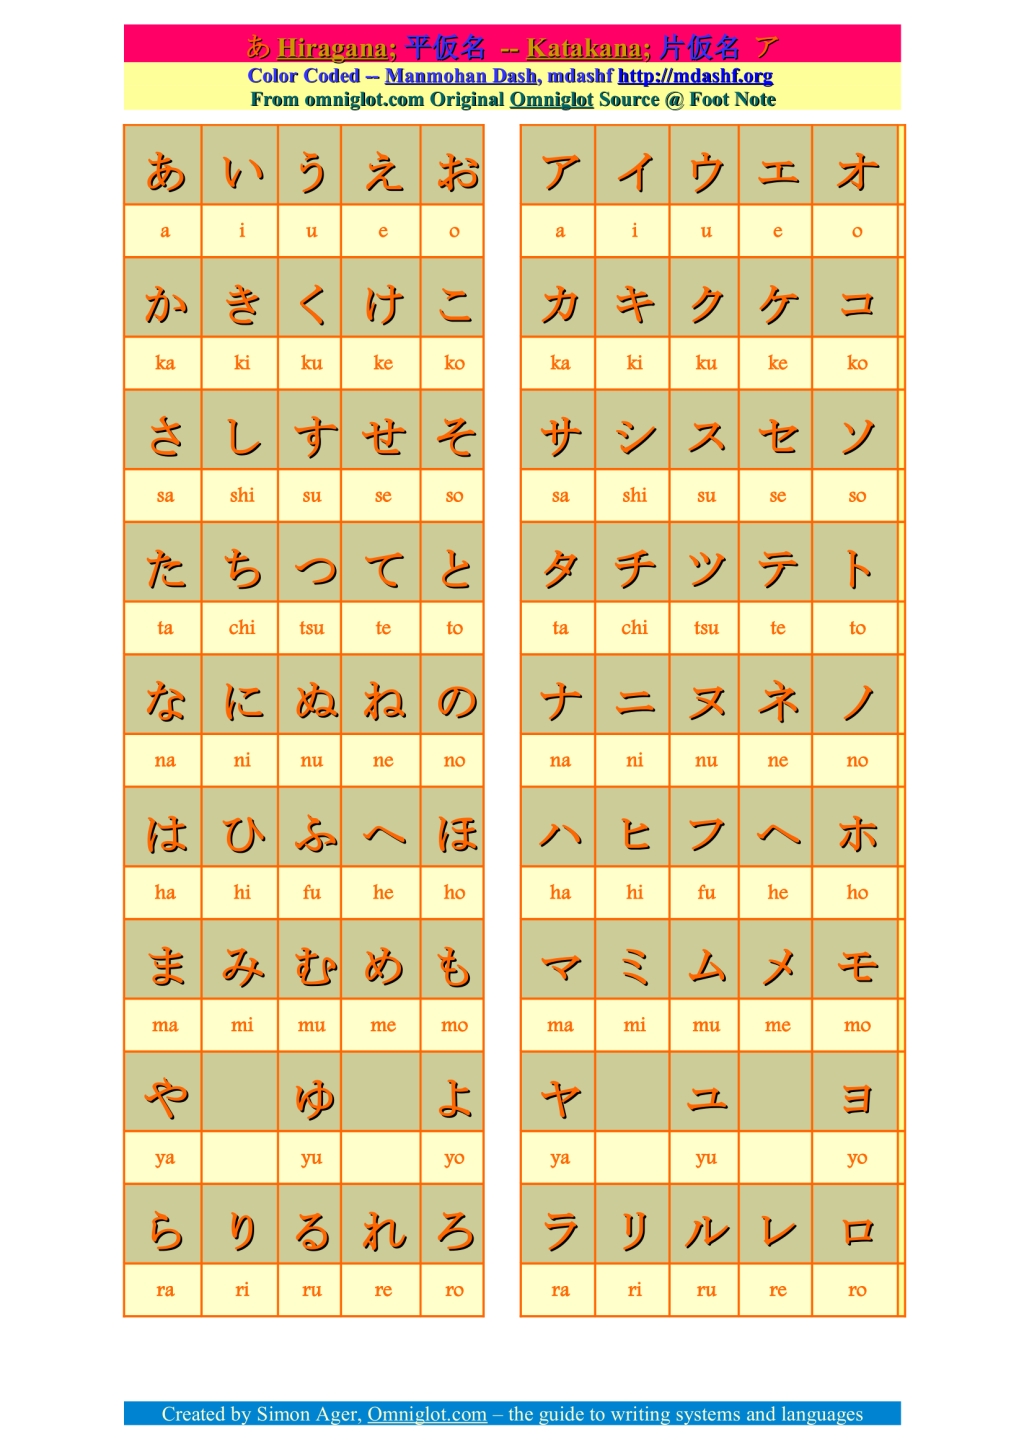 The hiragana and katakana characters.